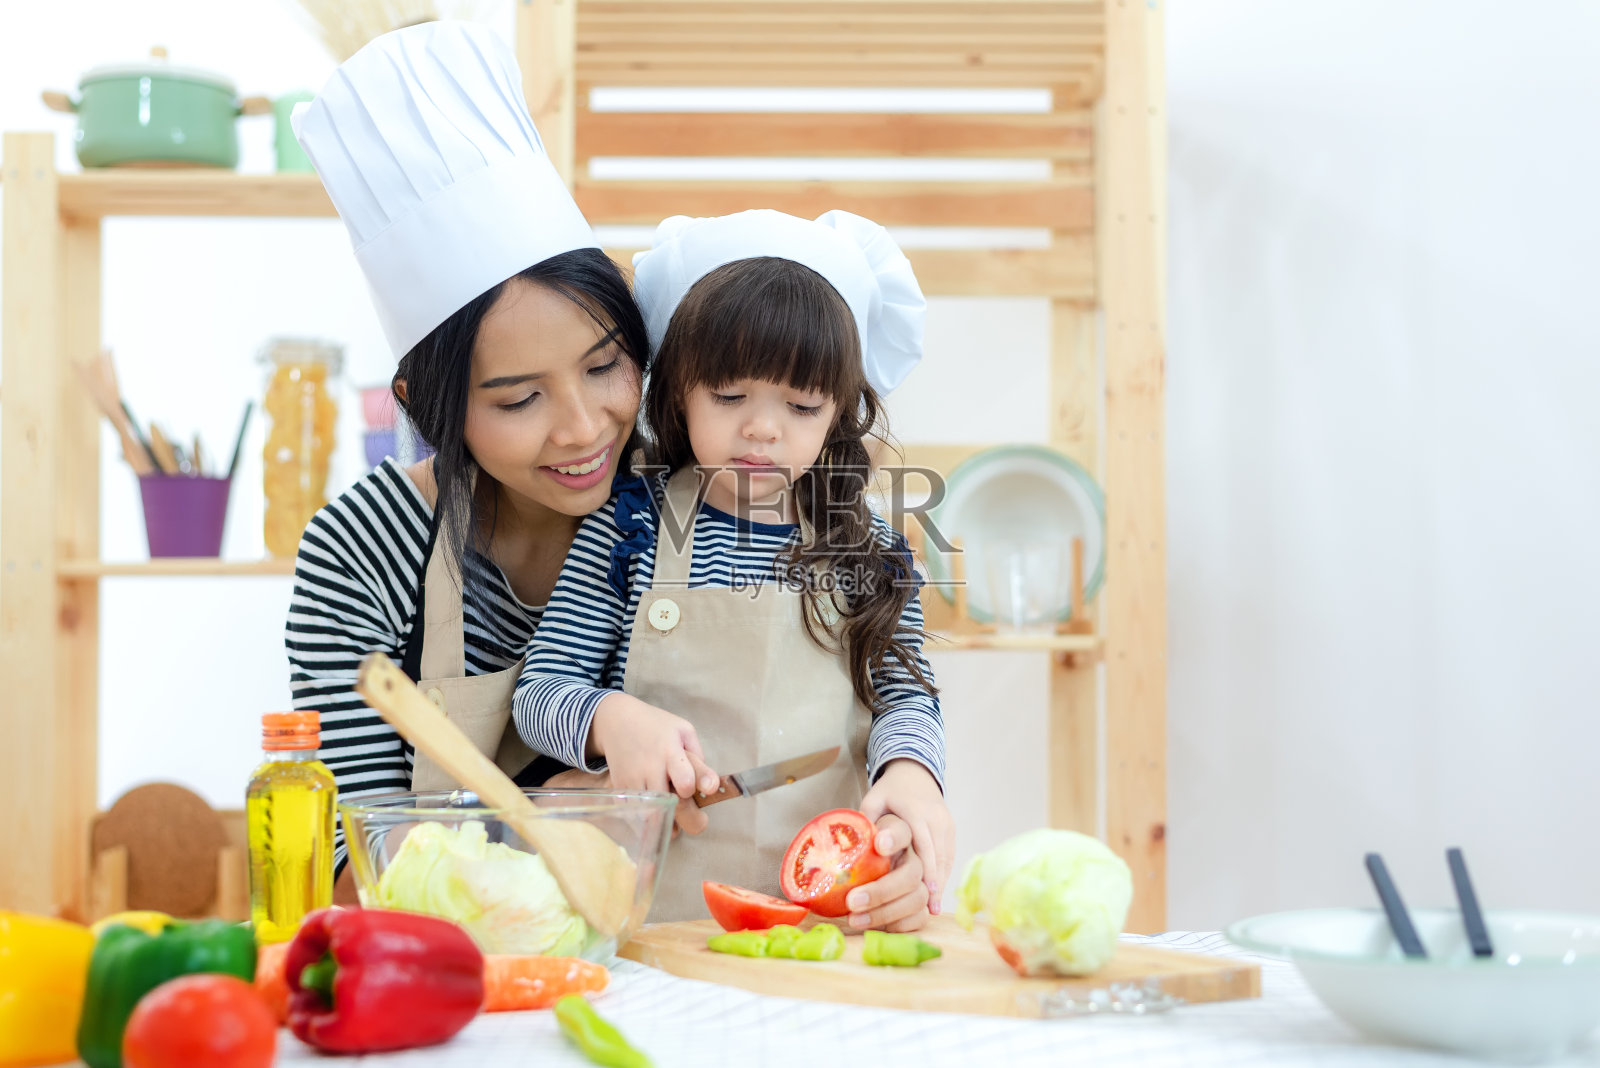 母亲和小女孩在厨房烹饪和切新鲜的蔬菜。家庭生活方式的概念照片摄影图片